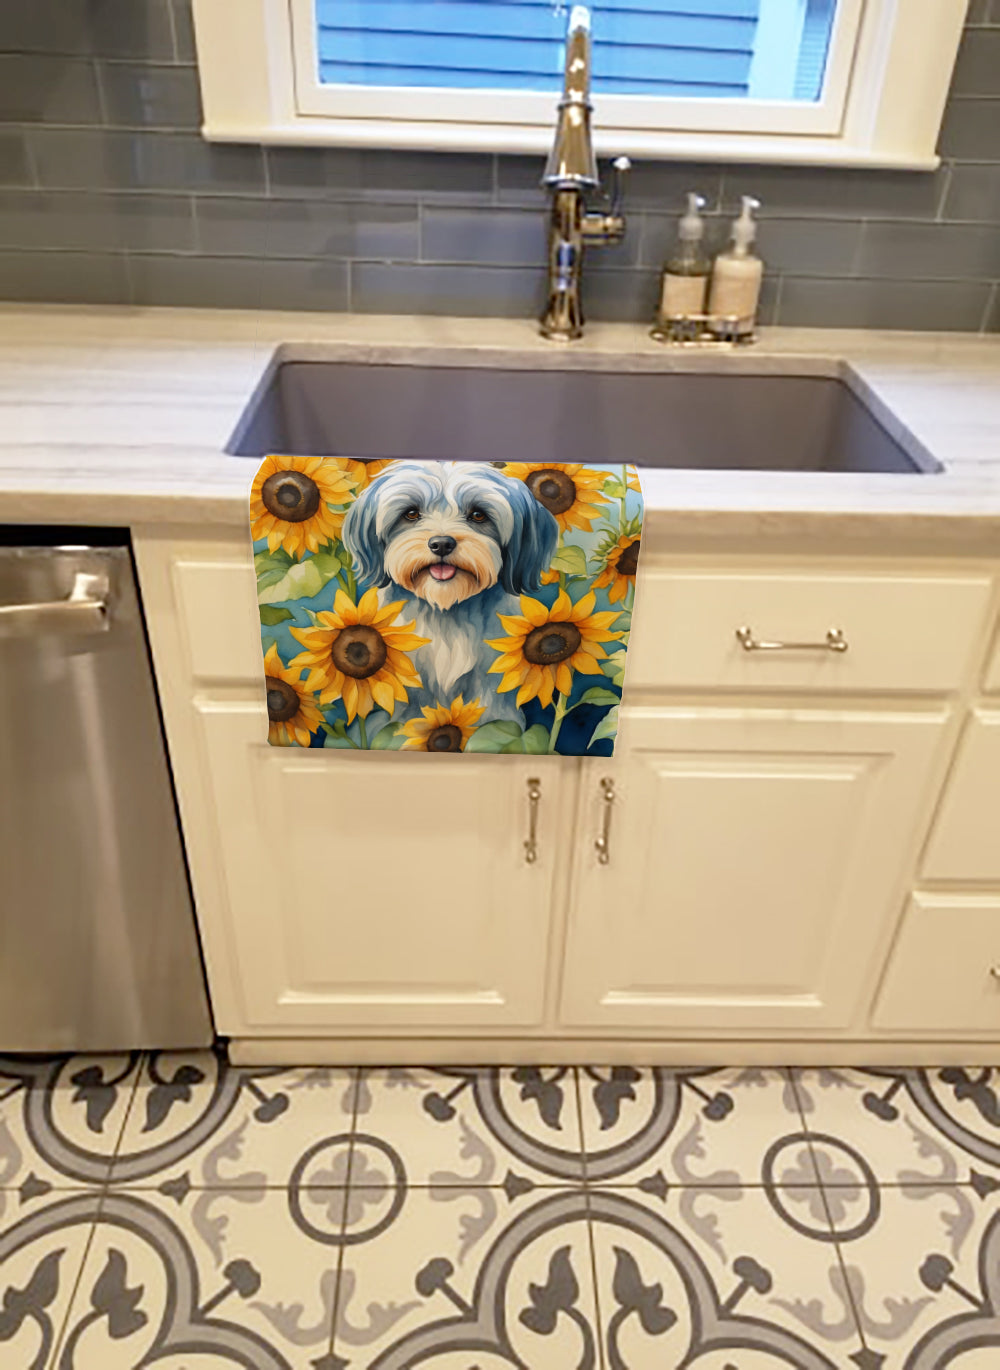 Buy this Tibetan Terrier in Sunflowers Kitchen Towel